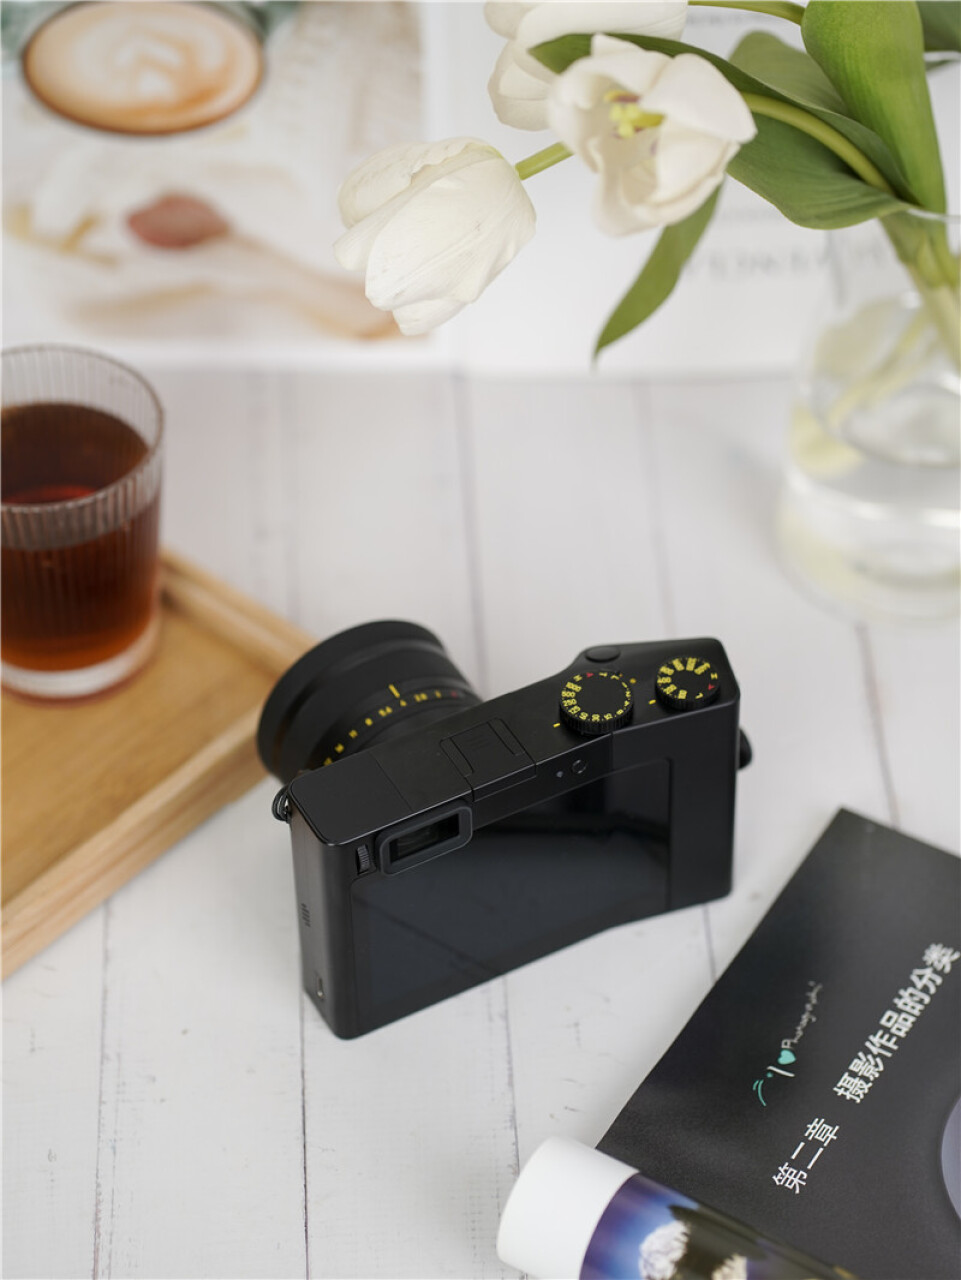 ZEISS蔡司ZX1多功能便携式数码相机高清一体相机(zeiss蔡司官网三坐标),第5张